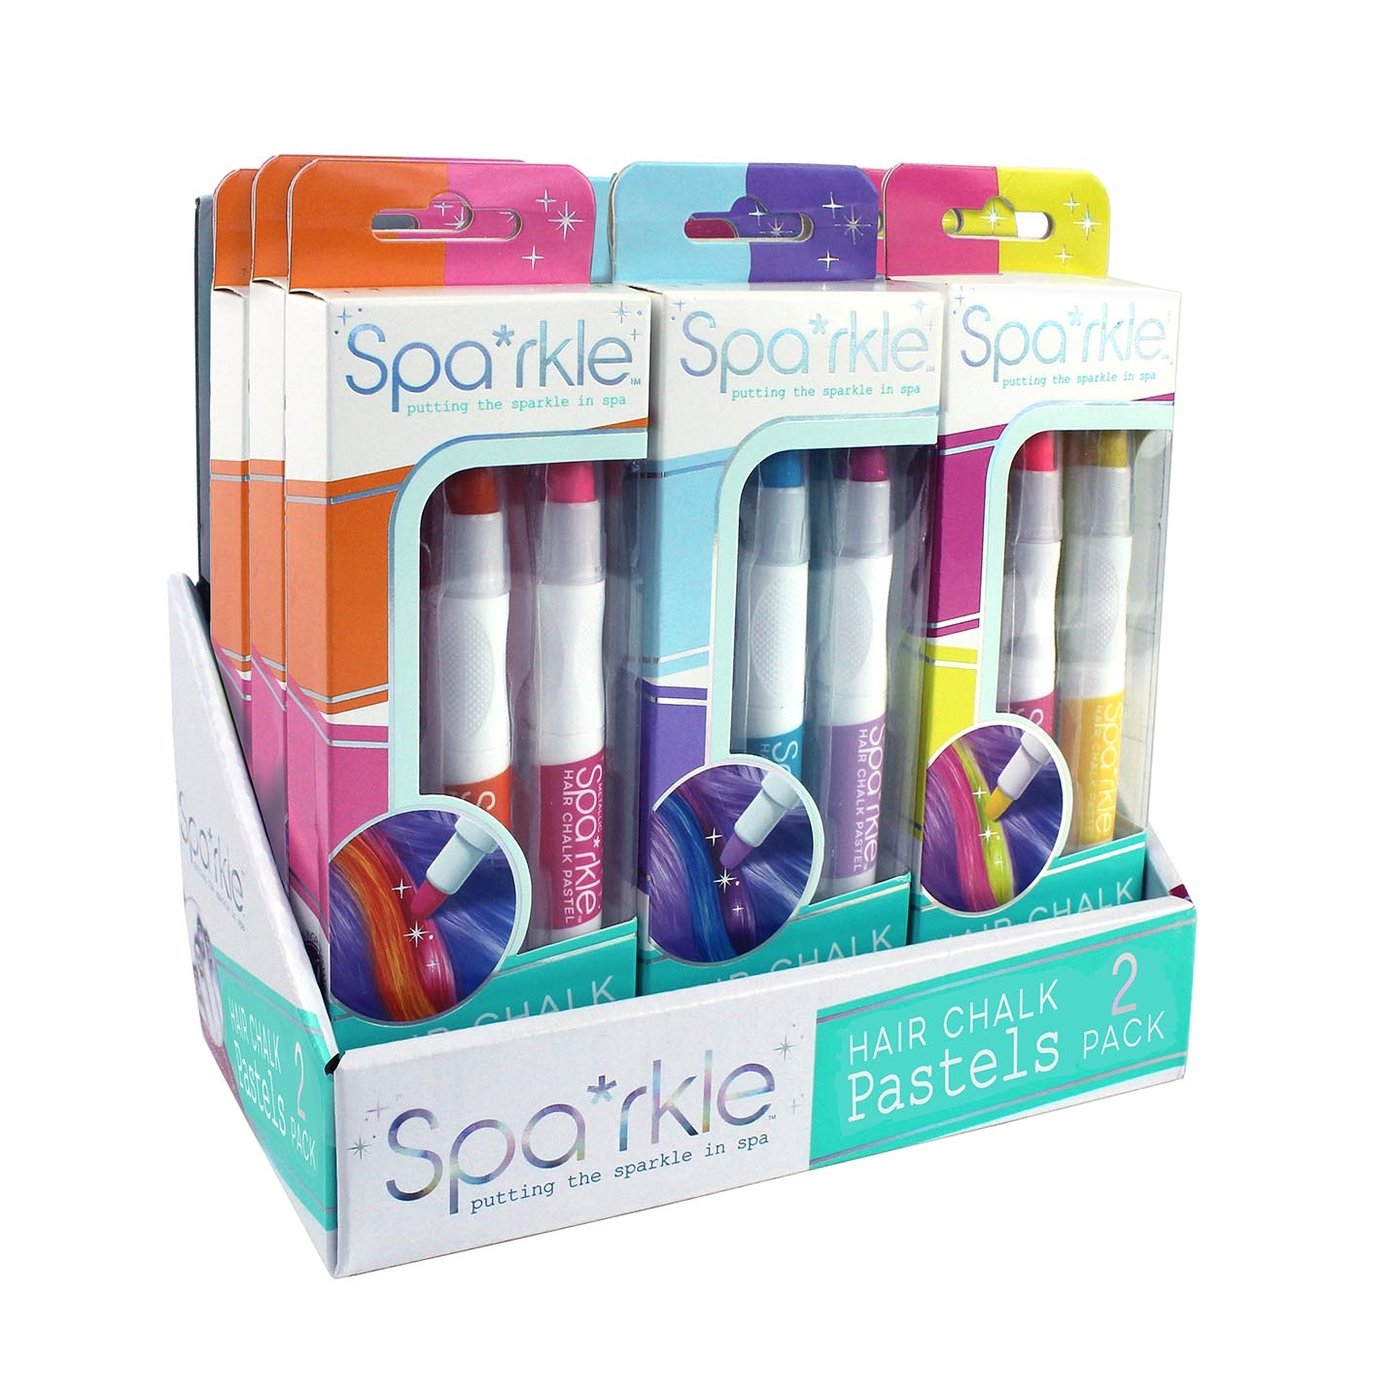 Spa*rkle Hair Chalk Pastels 2 Pack